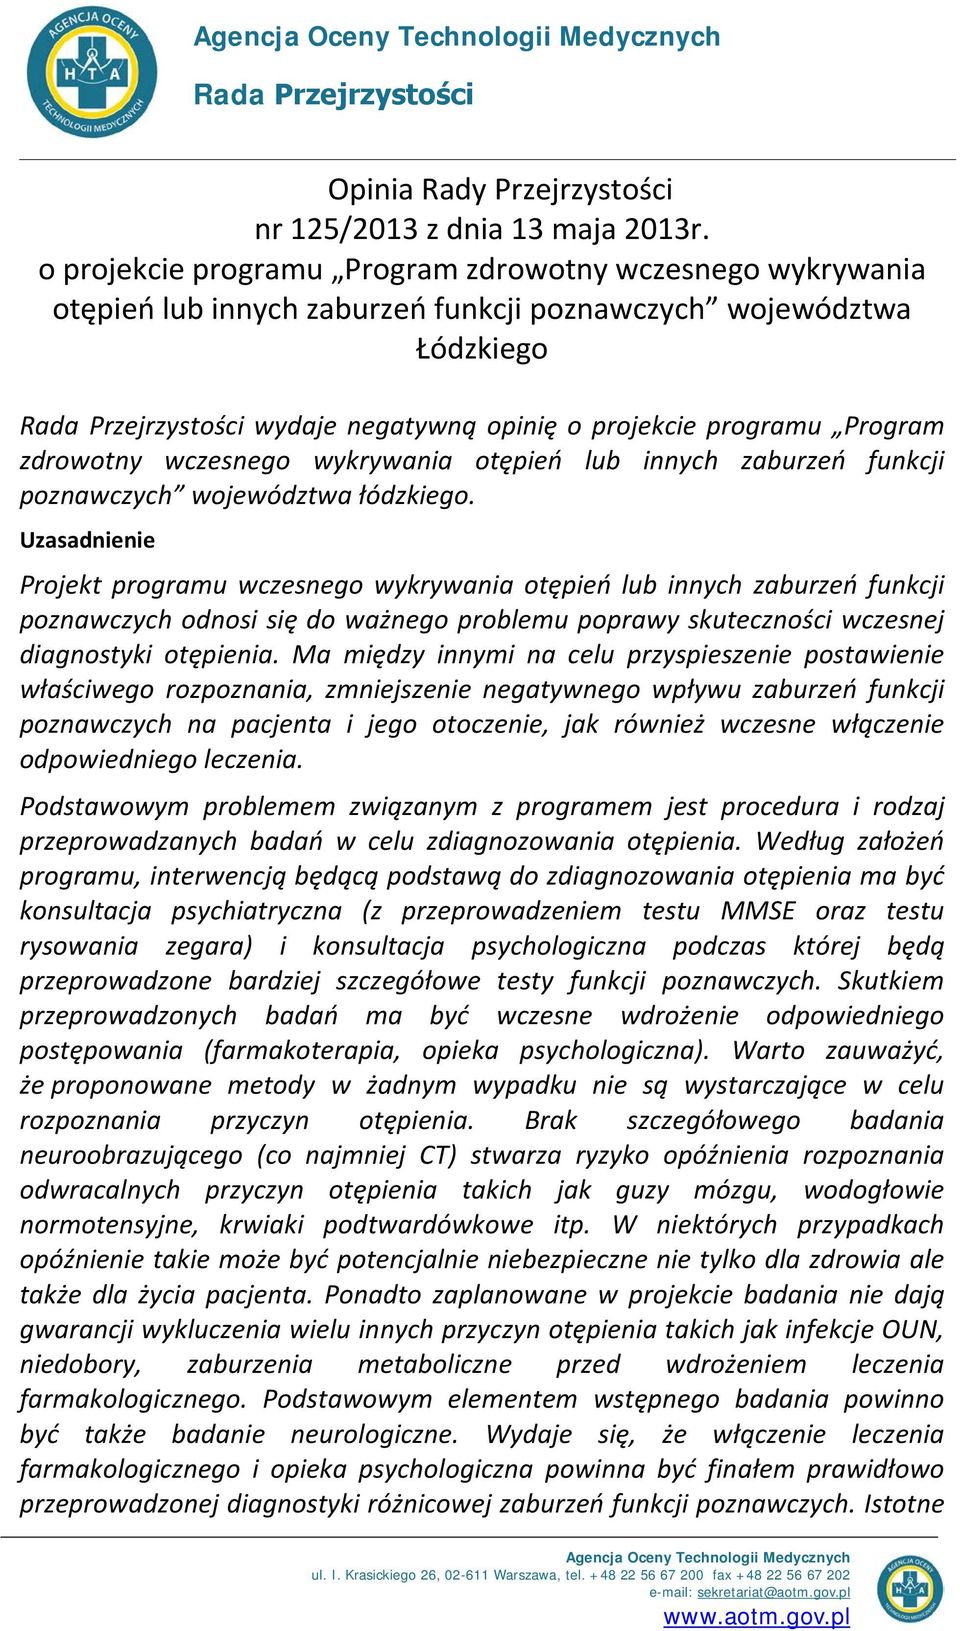 Program zdrowotny wczesnego wykrywania otępień lub innych zaburzeń funkcji poznawczych województwa łódzkiego.